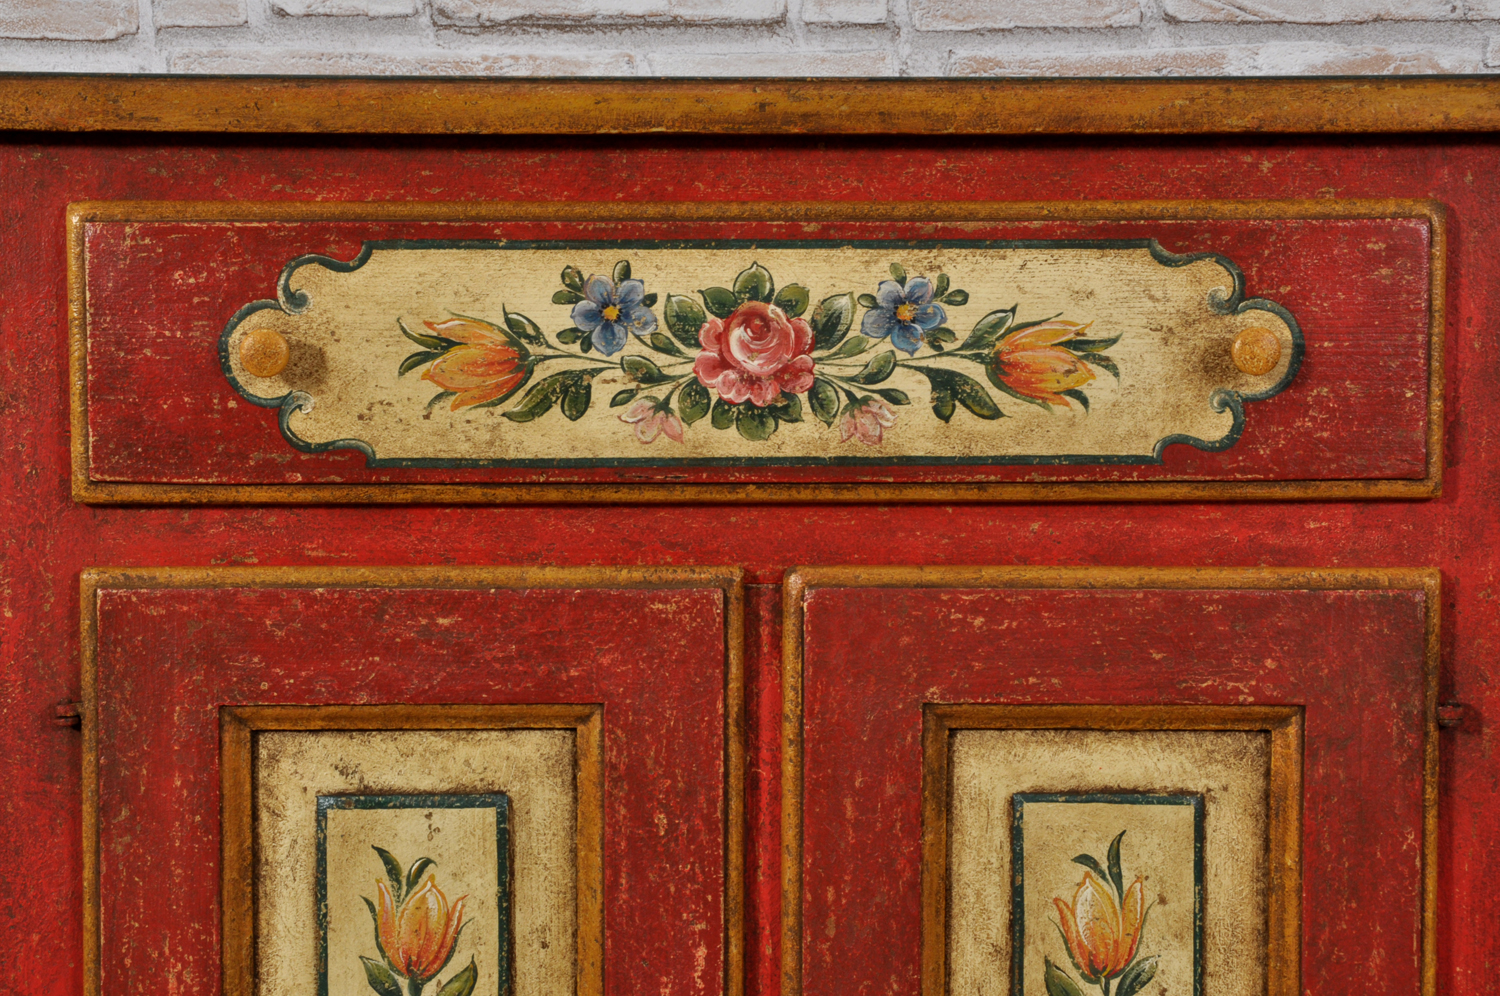 laccatura policroma e decorazioni con mazzi di fiori e disegni barocchi tipiche caratteristiche dei pregiati arredi di lusso di montagna realizzati agli inizi del settecento